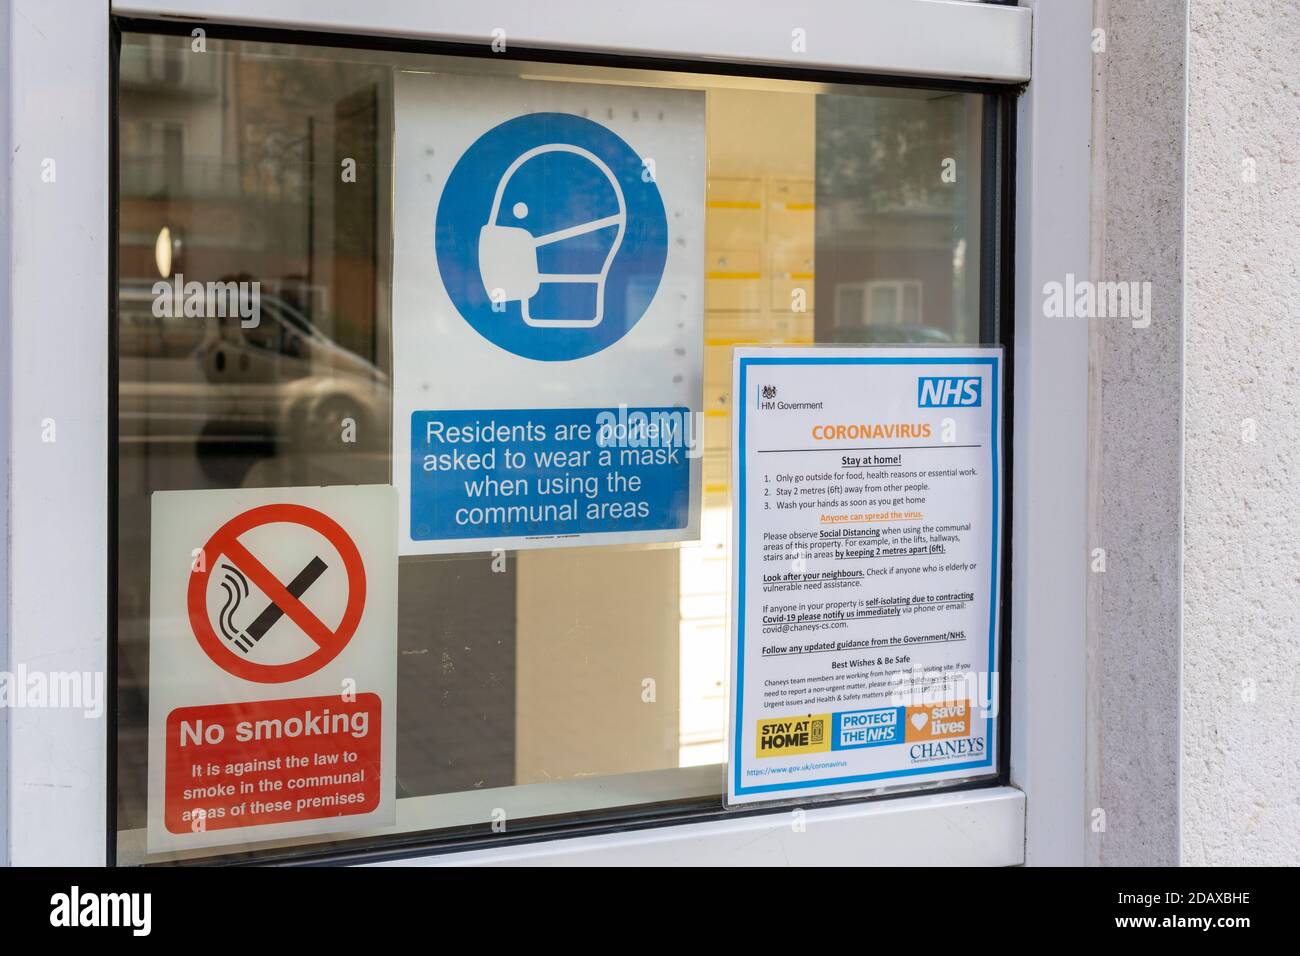 Il governo HM si accorge dell'area comunale per gli appartamenti chiedendo ai residenti di indossare maschere facciali e di rimanere a casa durante la pandemia di Coronavirus Covid-19, Regno Unito Foto Stock